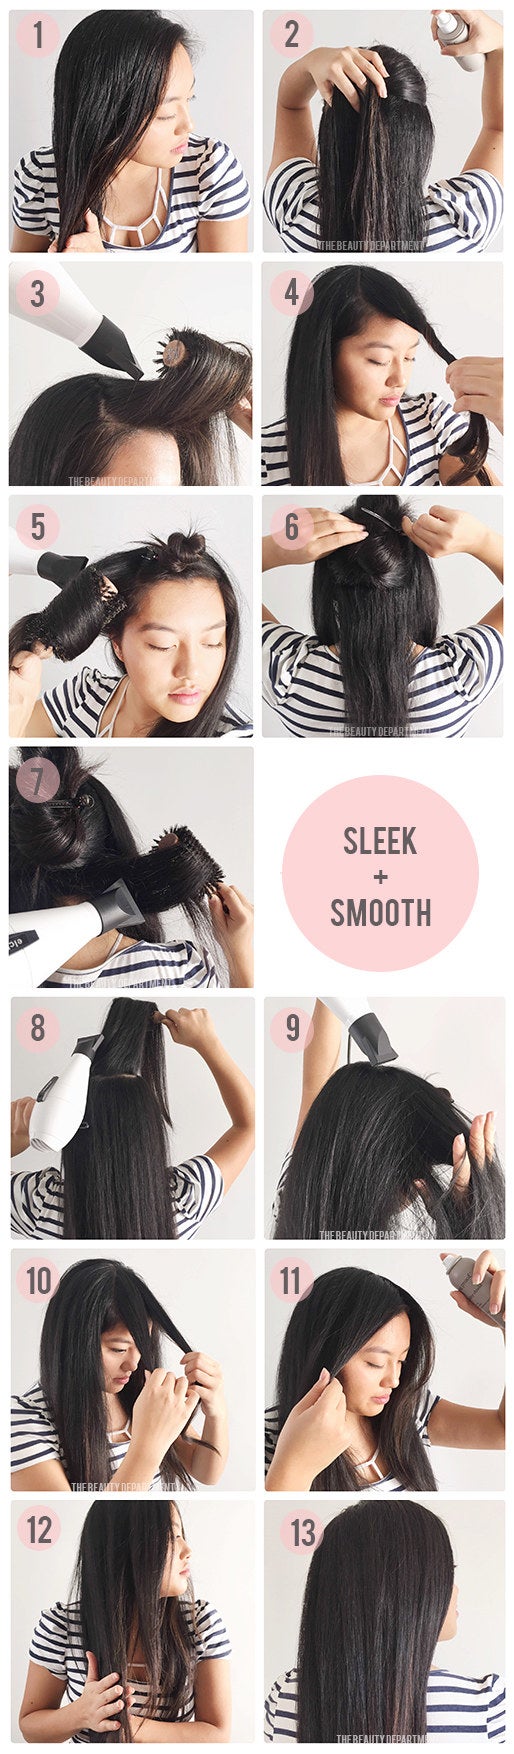 The tutorial for a sleek hair blowout 